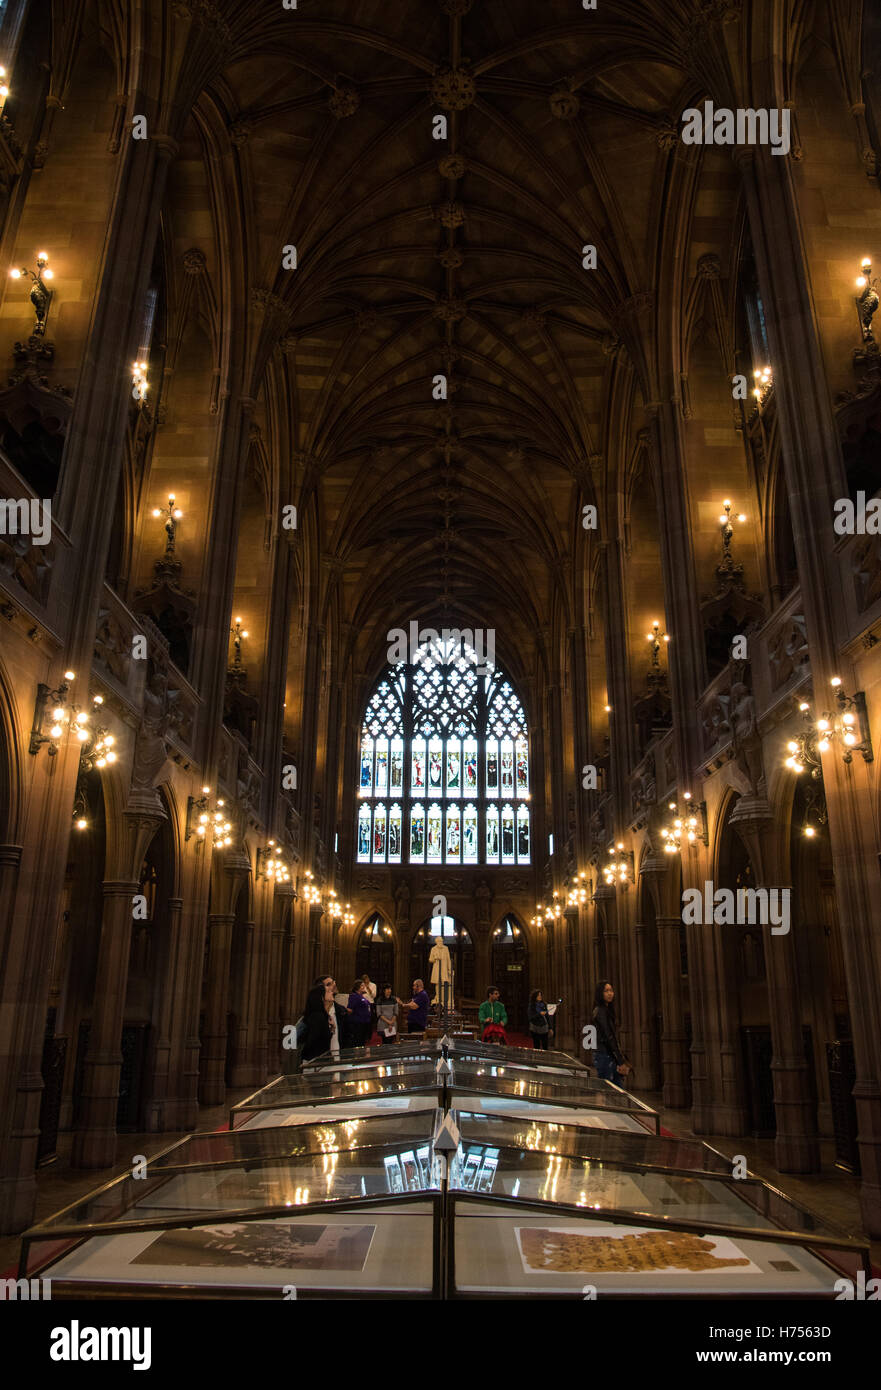 Interieur-Details des berühmten Gebäudes von der John Rylands Library in Manchester City, UK Stockfoto